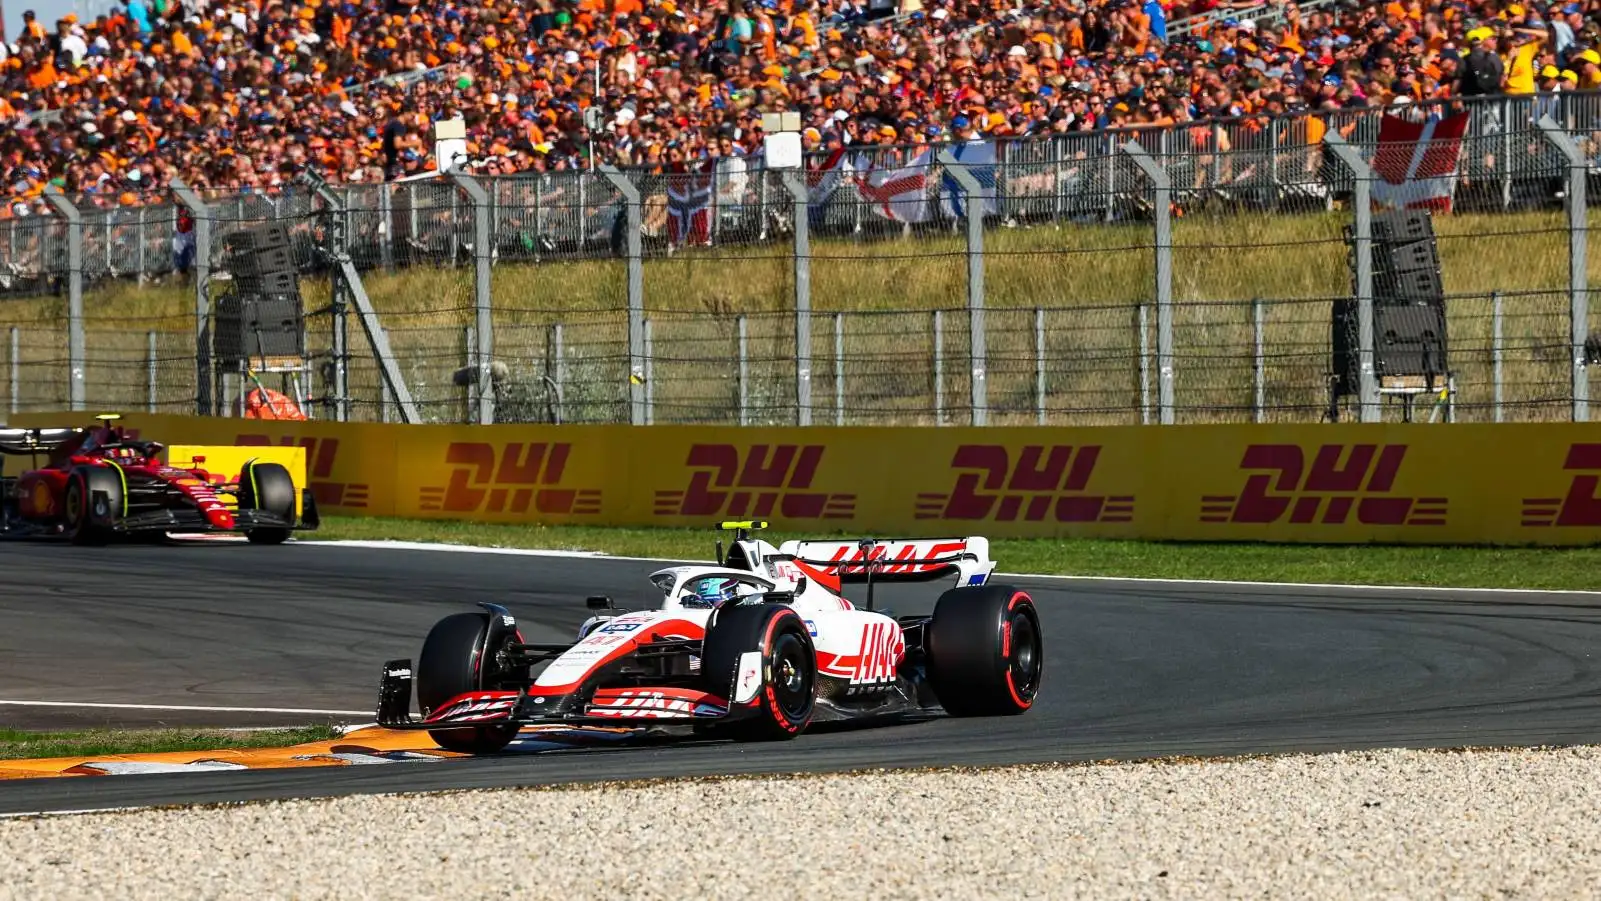 Mick Schumacher's Haas ahead of a Ferrari. Zandvoort September 2022.